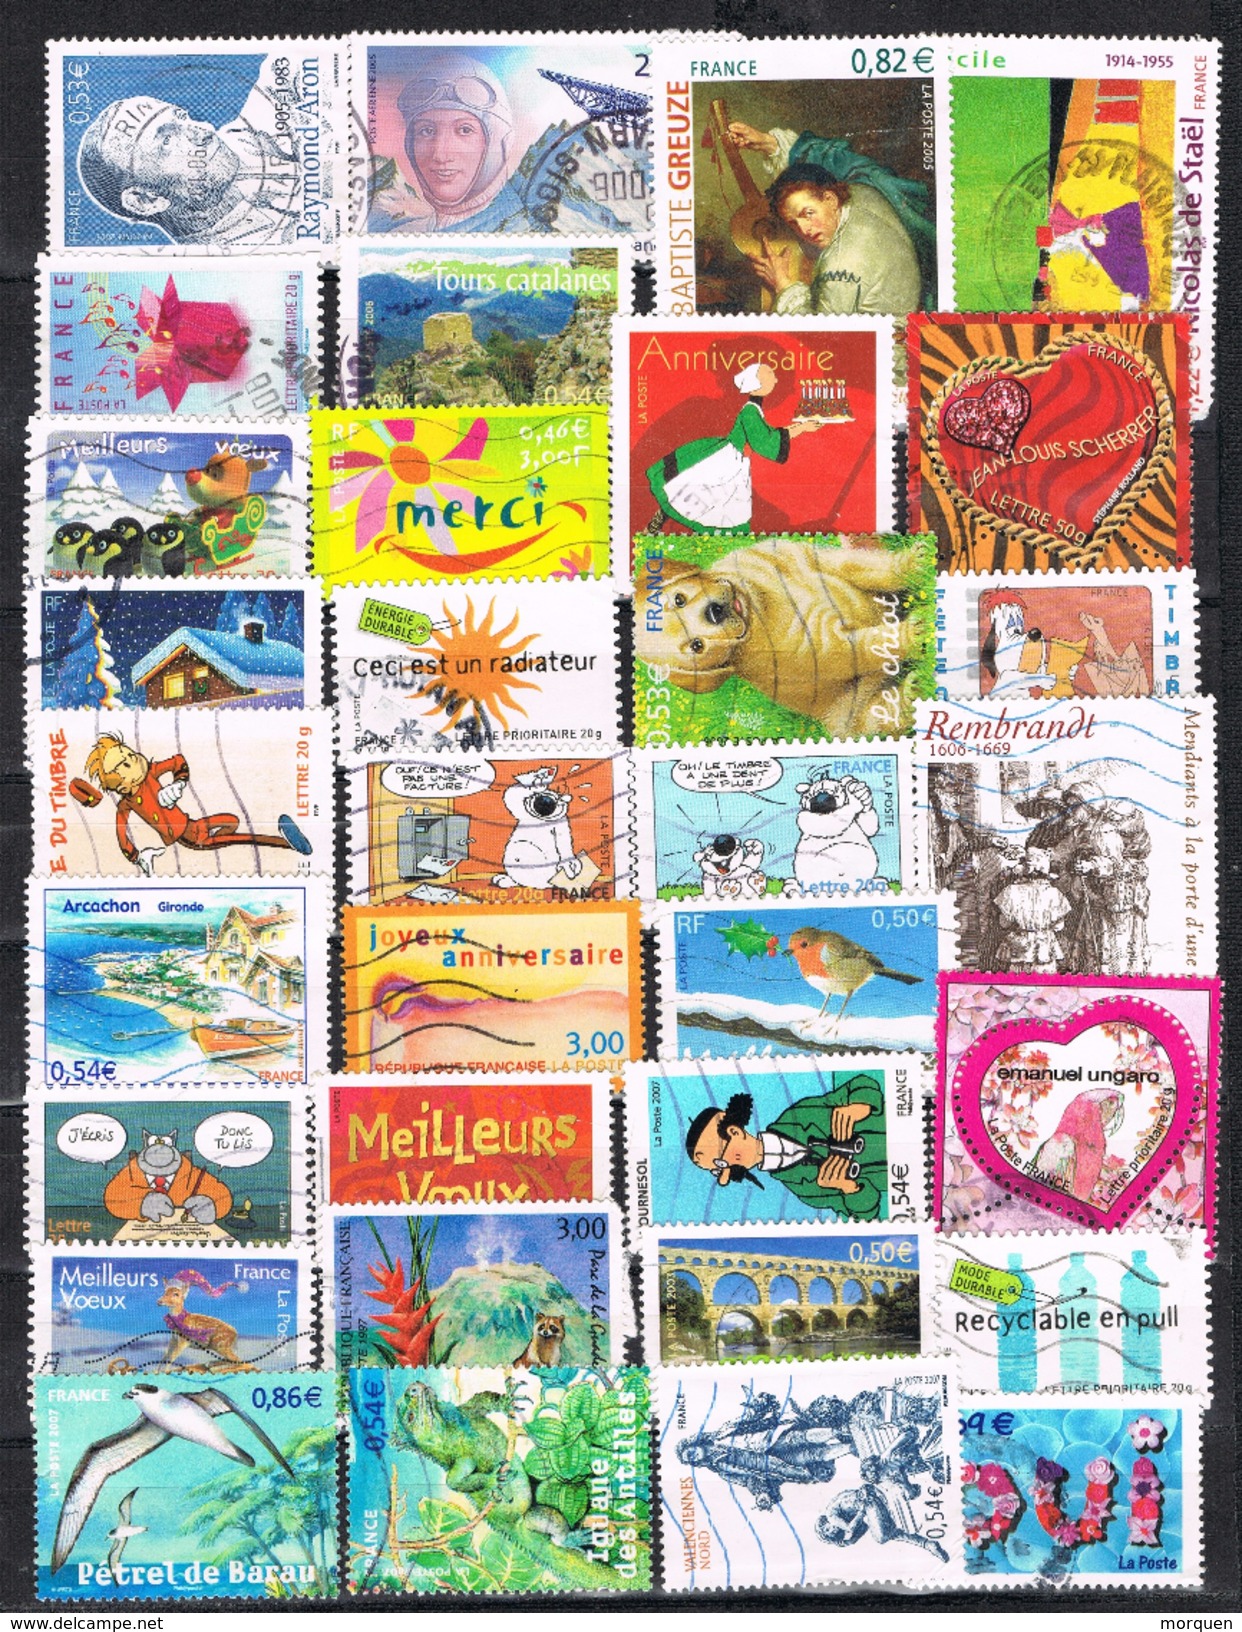 22011. Resto de coleccion FRANCIA en euros, 343 sellos, año 1999-2010 (9 scans)  º